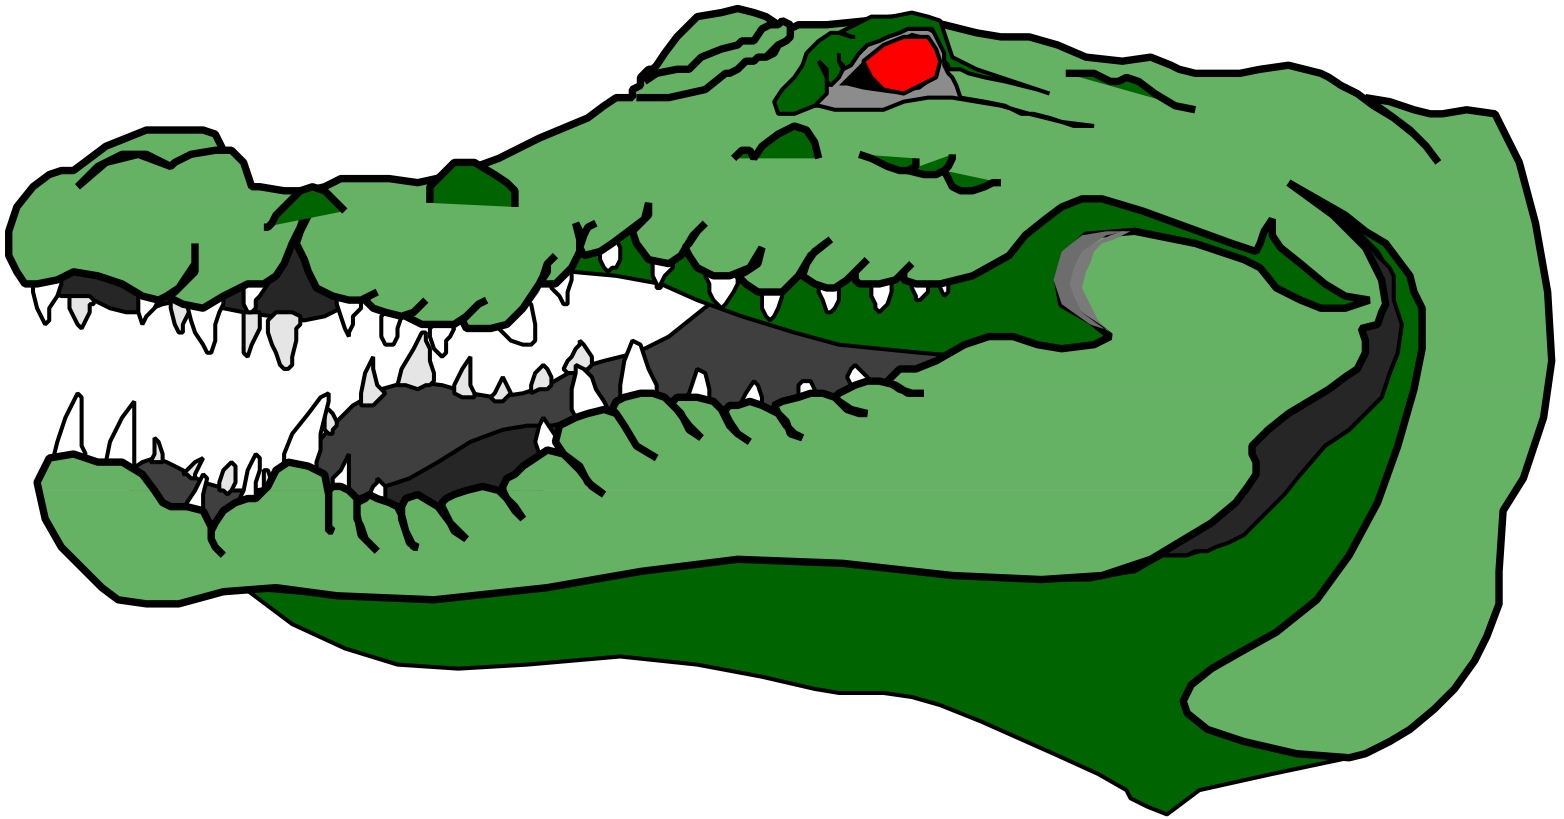 Crocodile alligators cartoon and art images on clip art 2